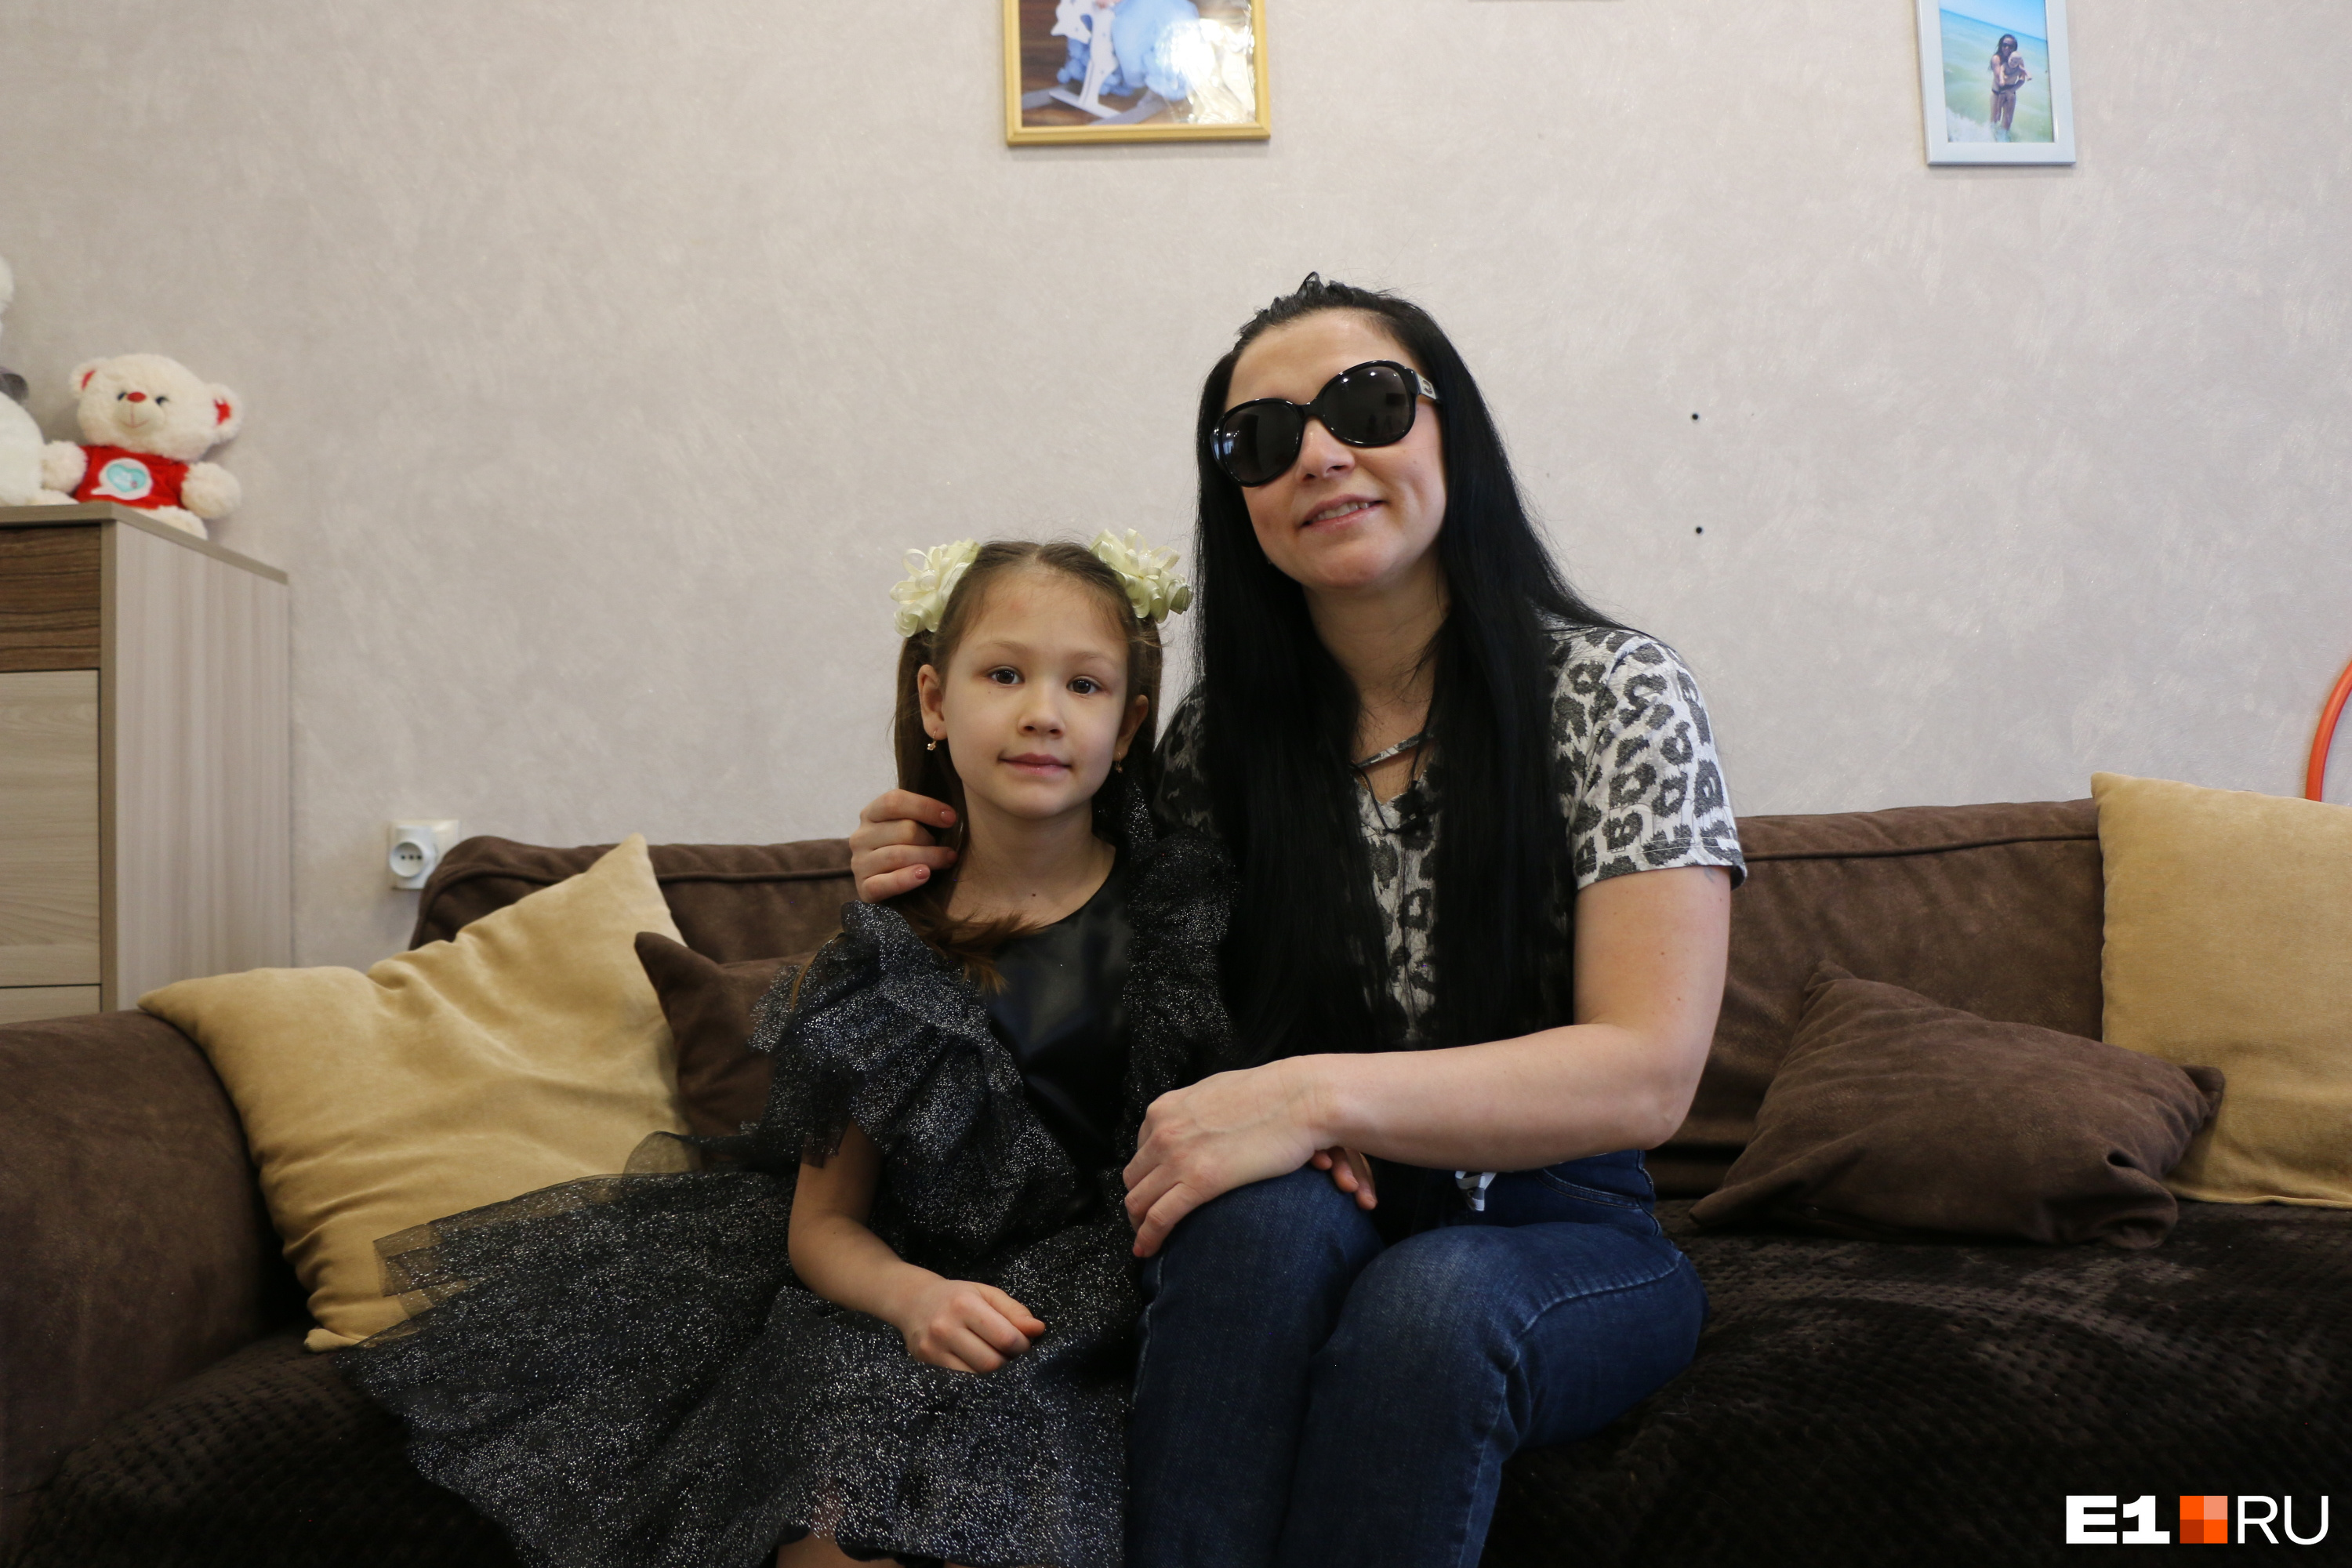 «Хочется увидеть своих детей». Как живет красотка, которой в Екатеринбурге плеснули в лицо кислотой и лишили зрения